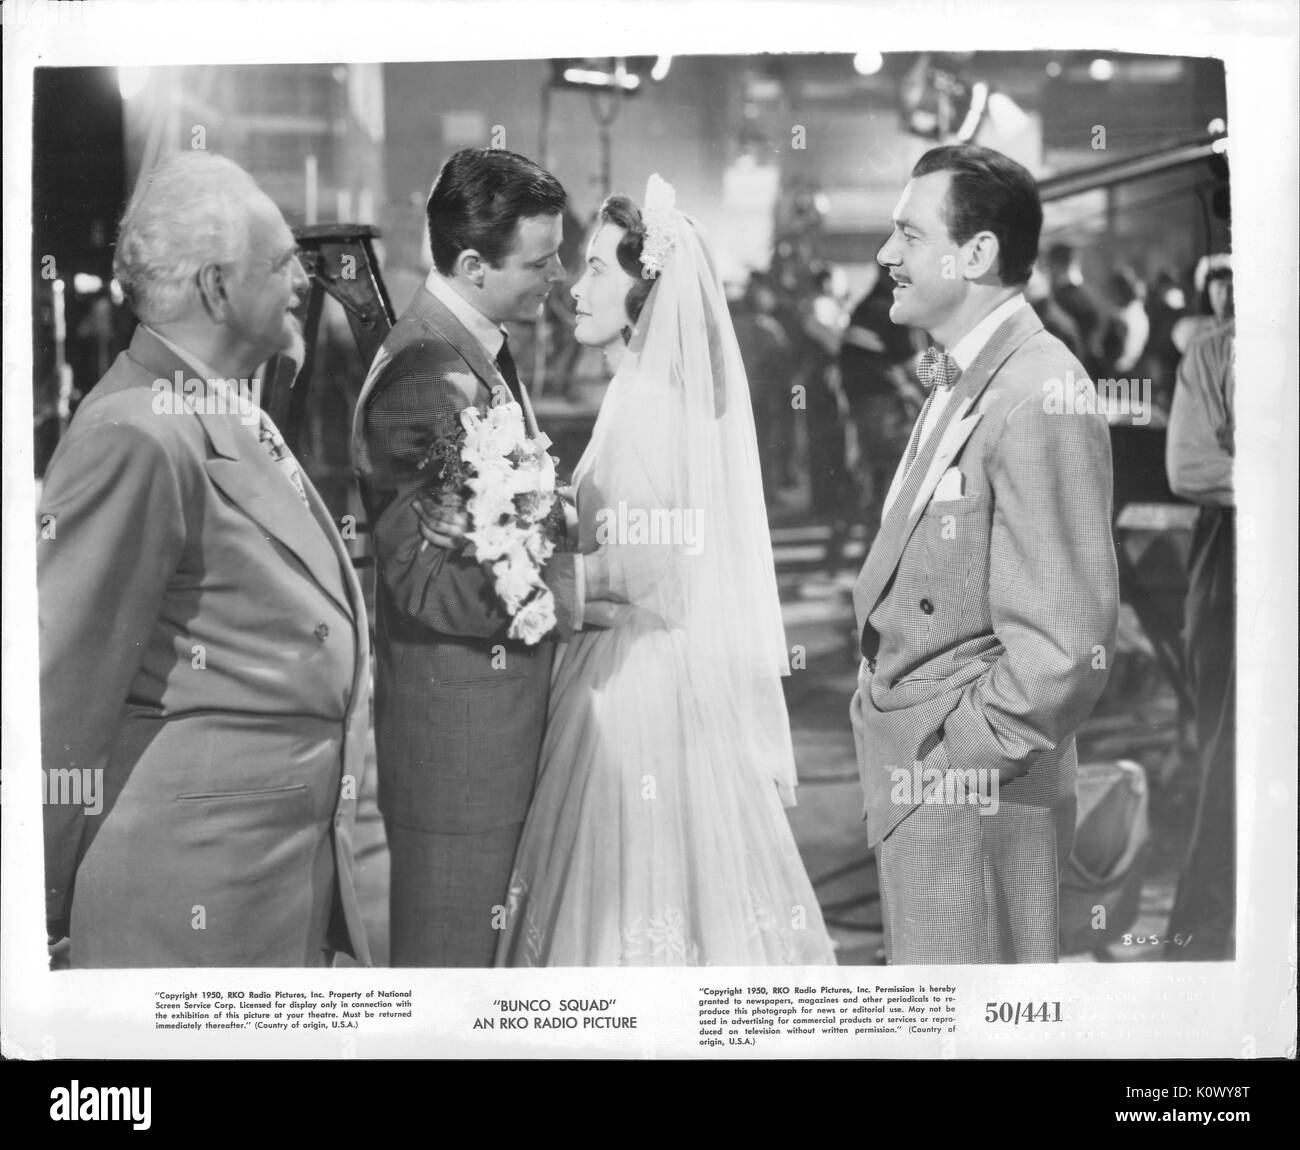 Ein Film noch Szene aus 'Bunco Squad" (1950 semi-dokumentarischen Film von RKO Radio Pictures vertrieben), ein junges Paar, das nach einander in einer Hochzeit Ritus während zwei Männer, einer auf jeder Seite sehen Sie glücklich, 1950. Stockfoto